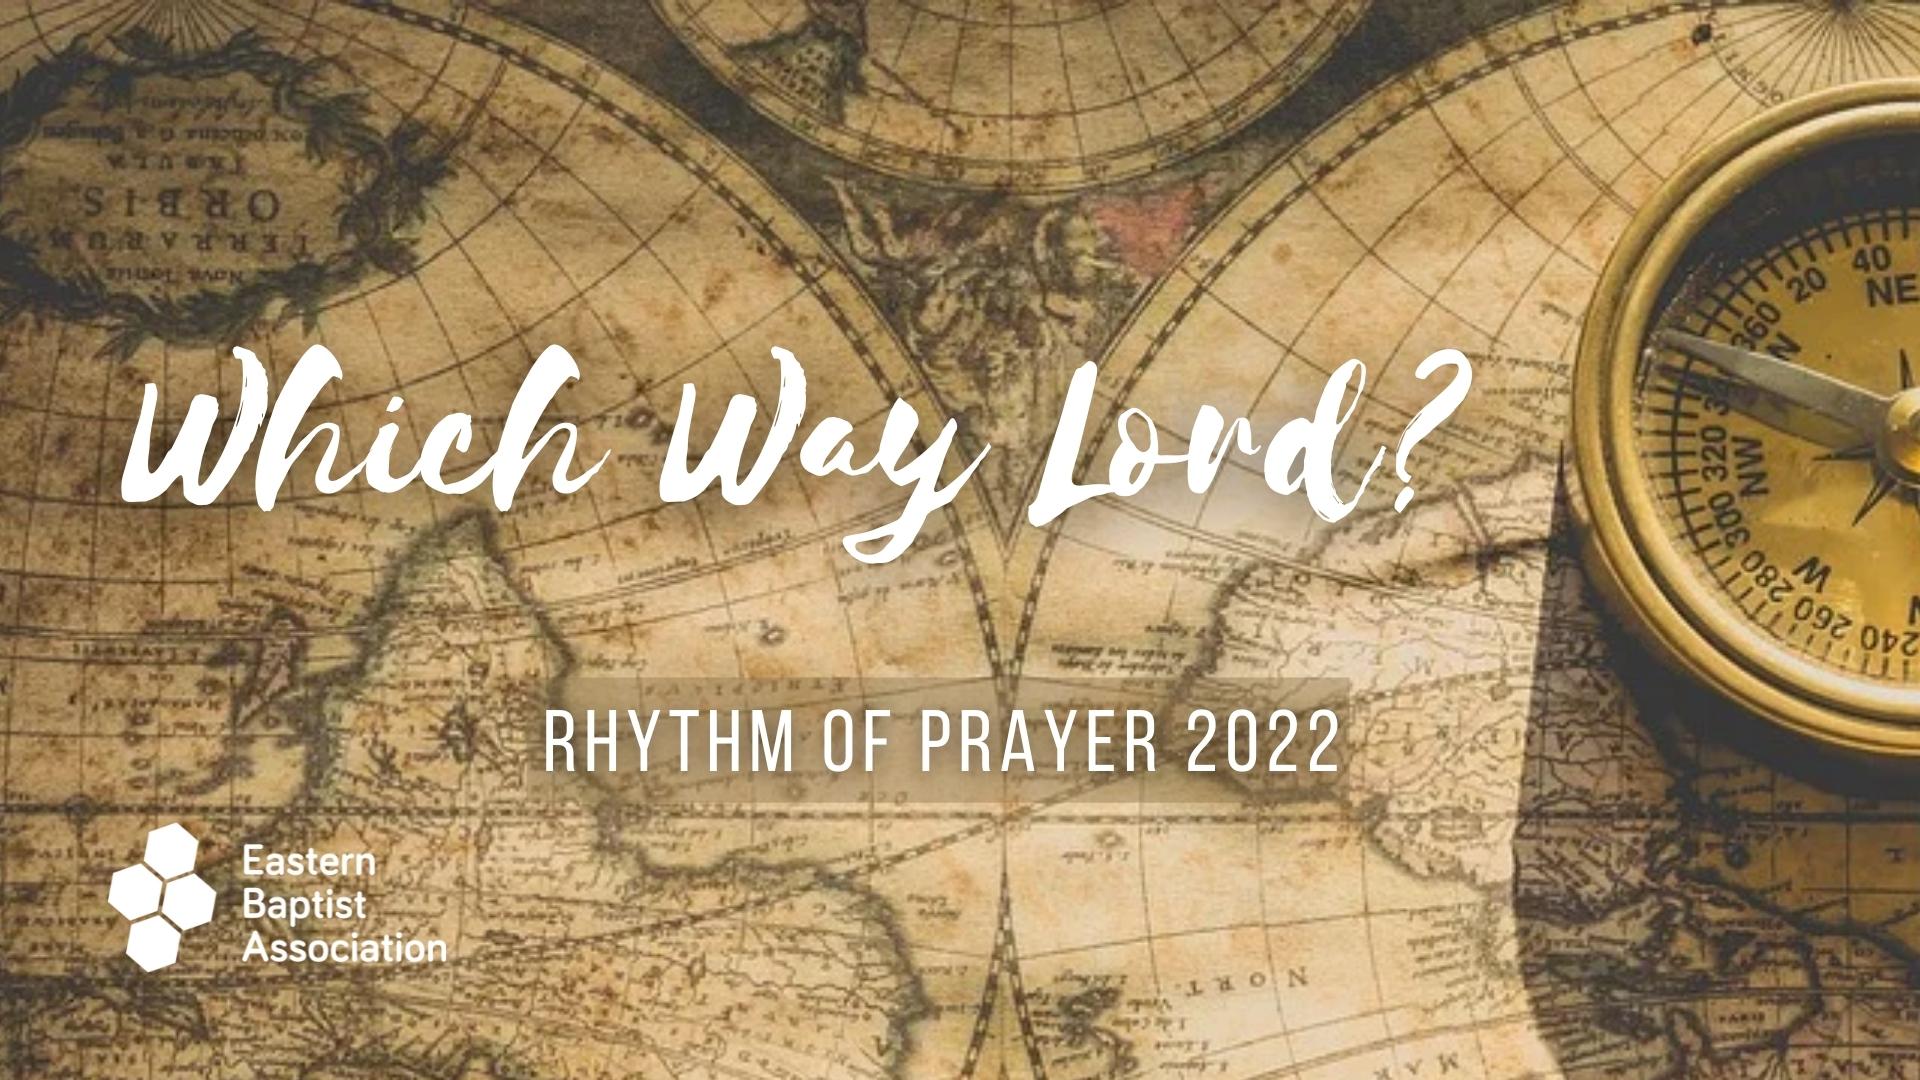 Which way Lord? EBA Rhythm of prayer 2022